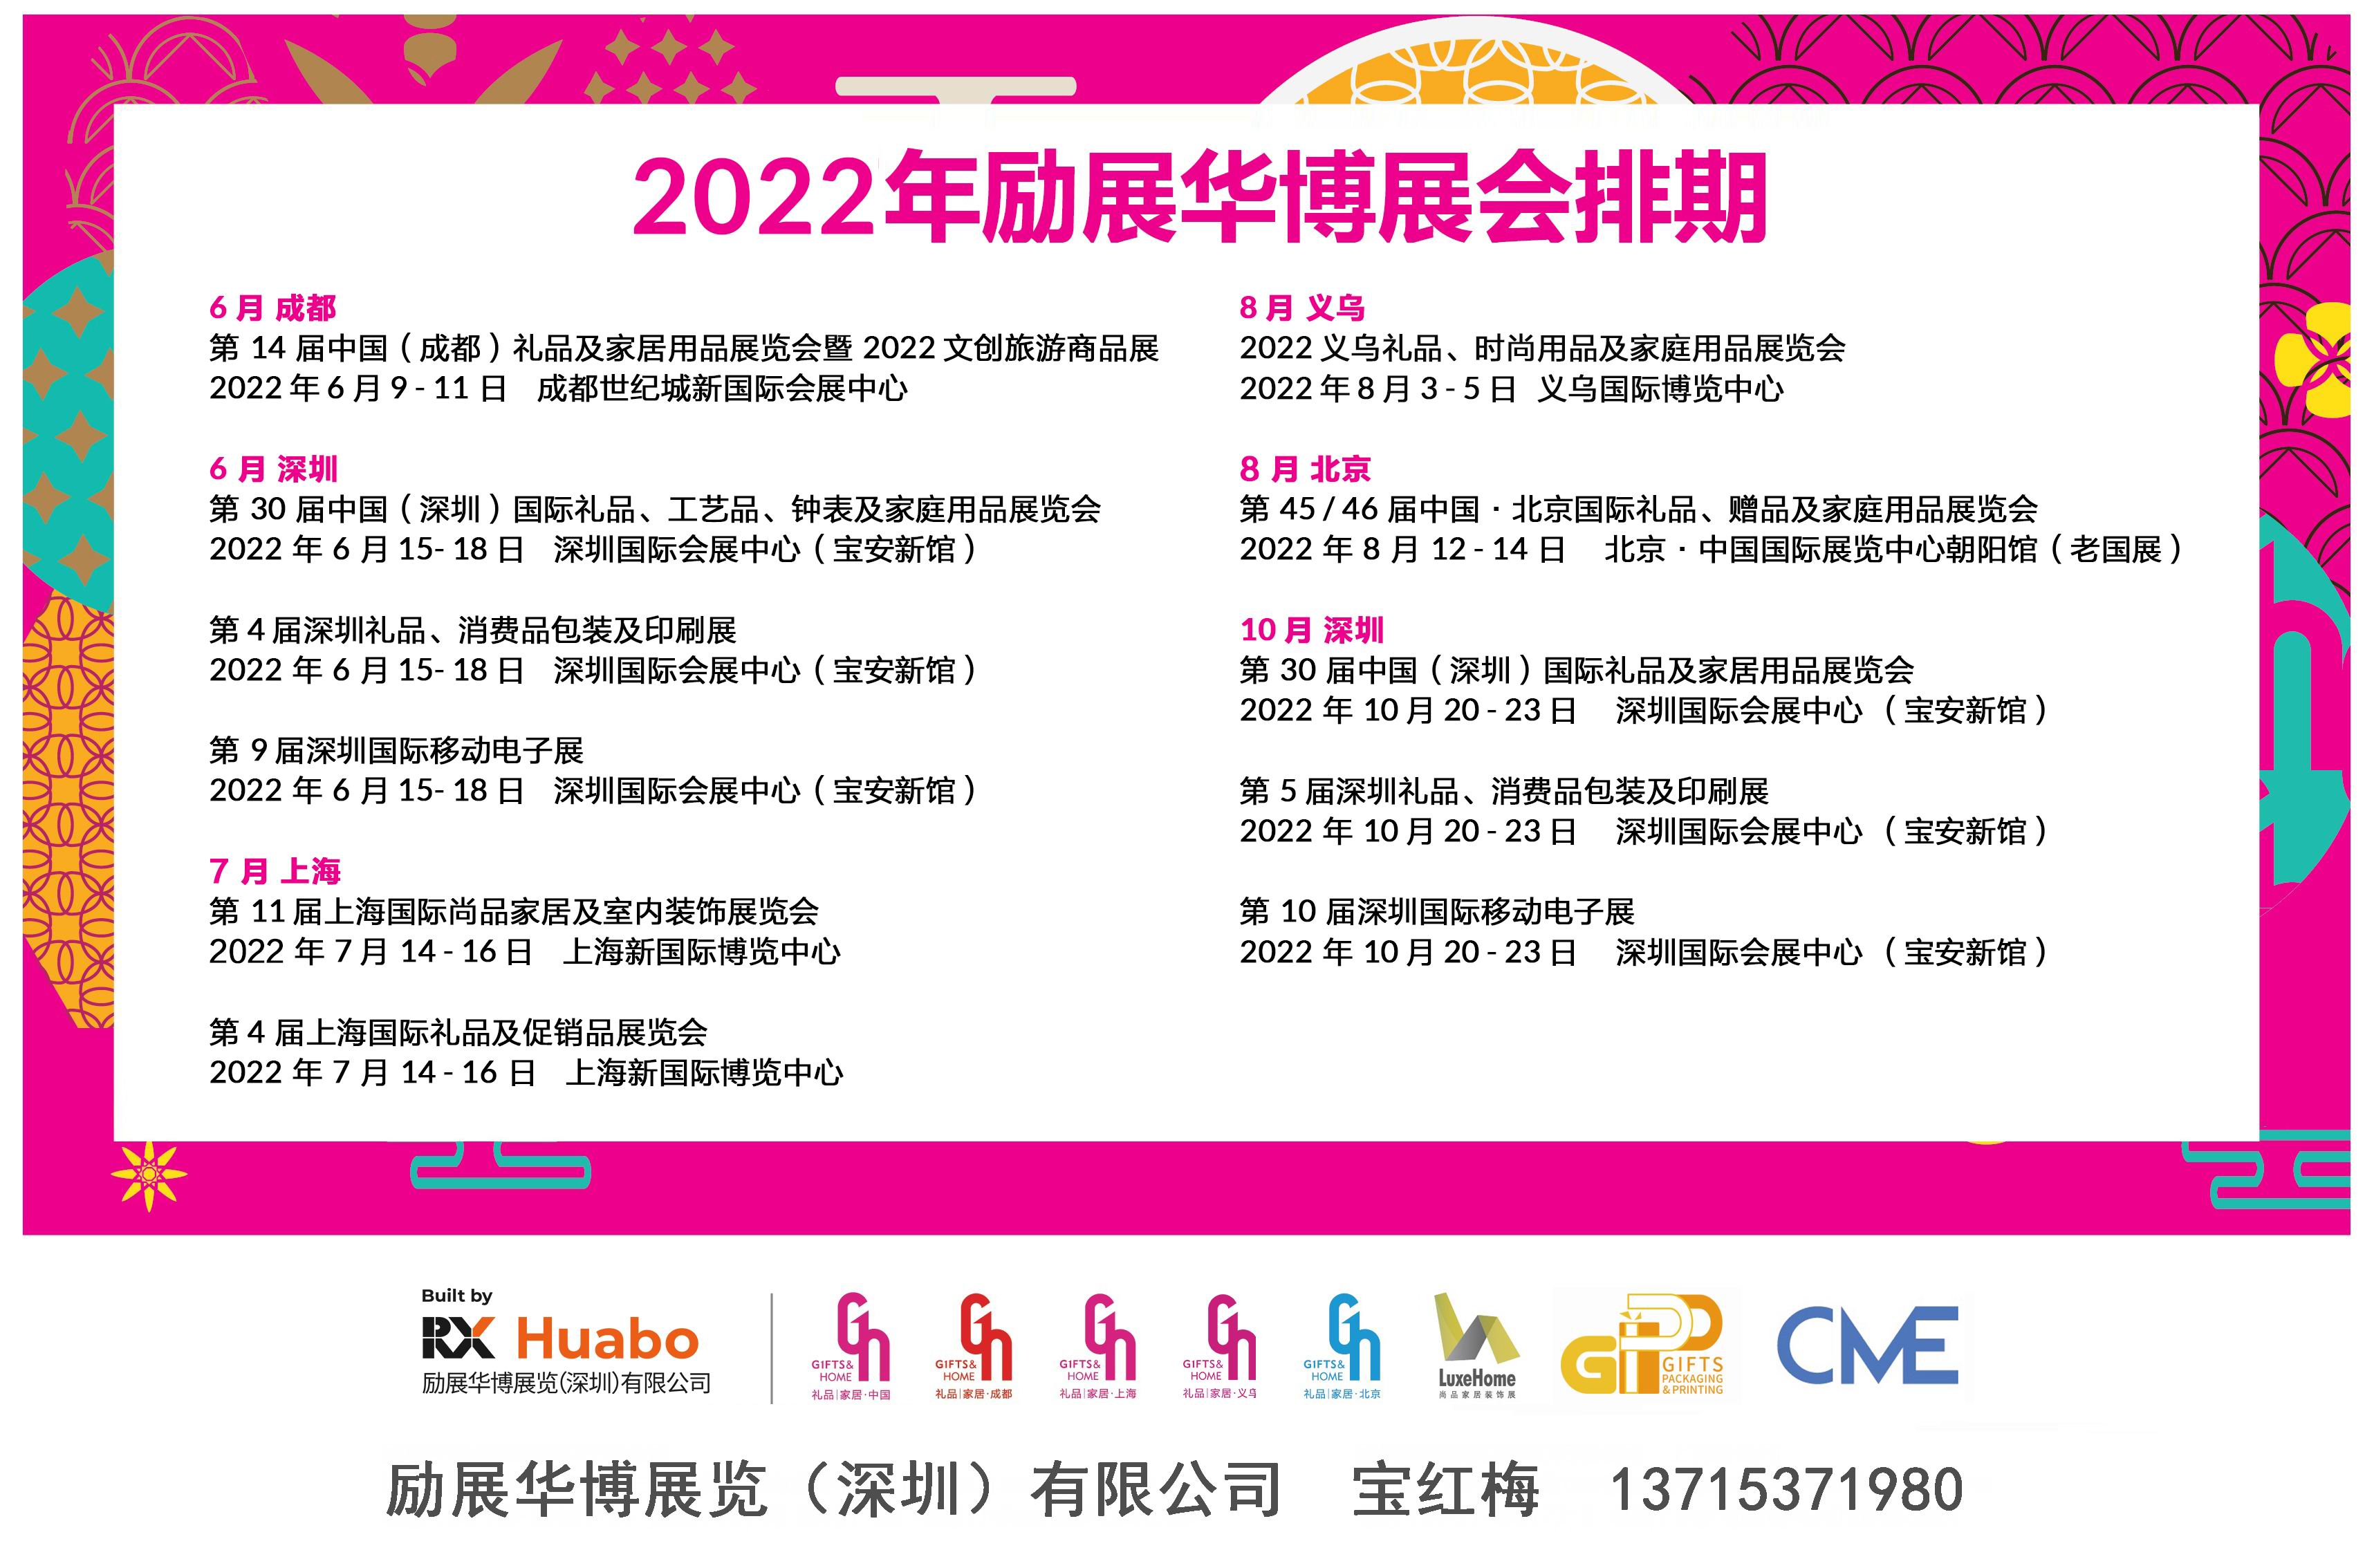 2022年全国礼品家居展及生活电器展、消费电子展报名入口(www.828i.com)